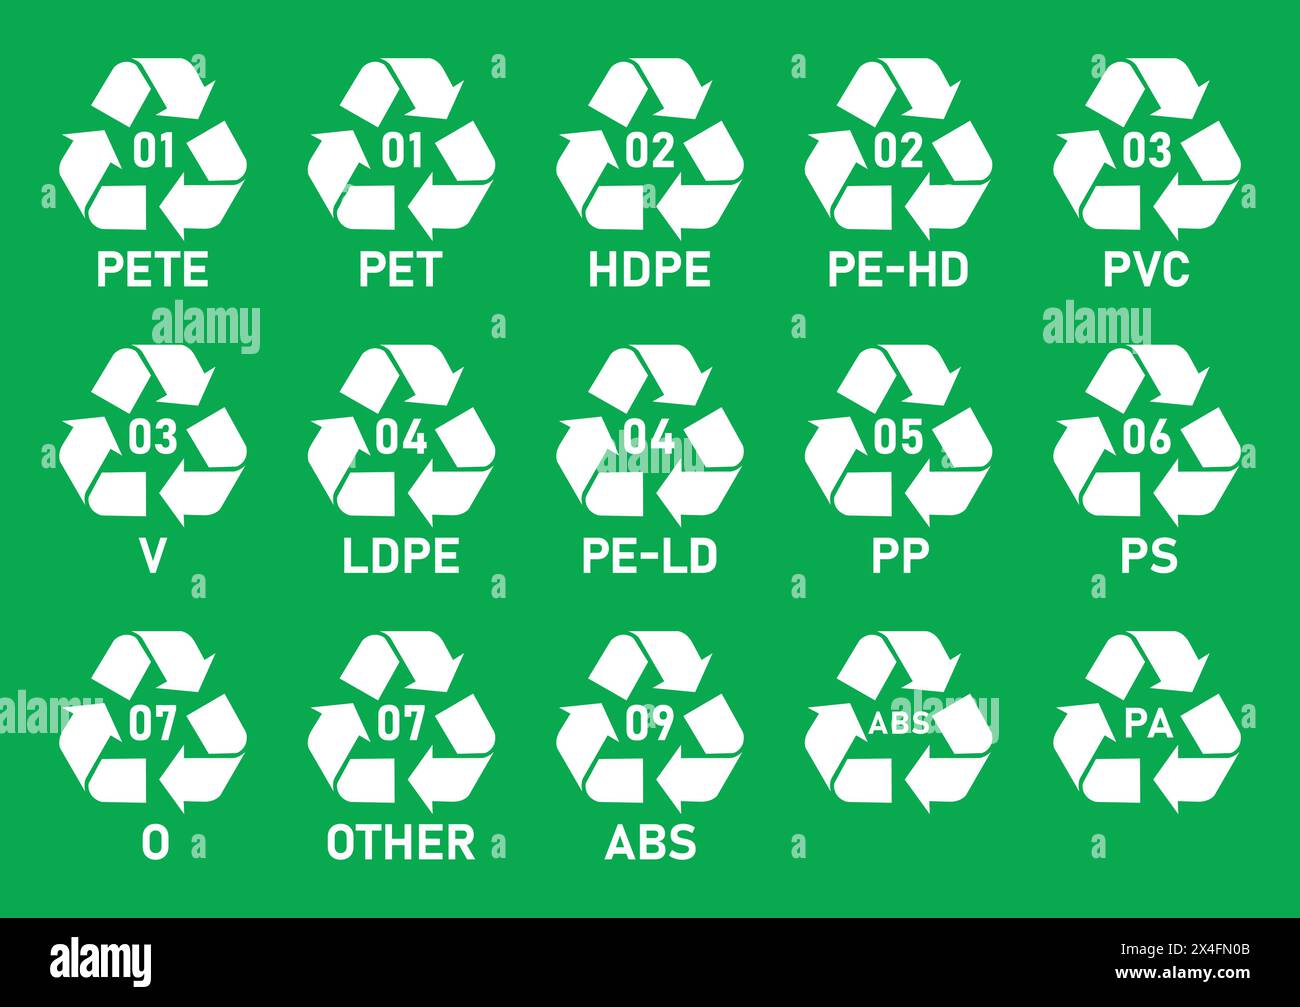 Symbol für Recycling-Codes aus Kunststoff. Symbole für Recycling-Codes aus Mobius-Streifen aus Kunststoff isoliert auf grünem Hintergrund. Recycling-Codes für Kunststoff – 01 PET, 07 SONSTIGES. Stock Vektor